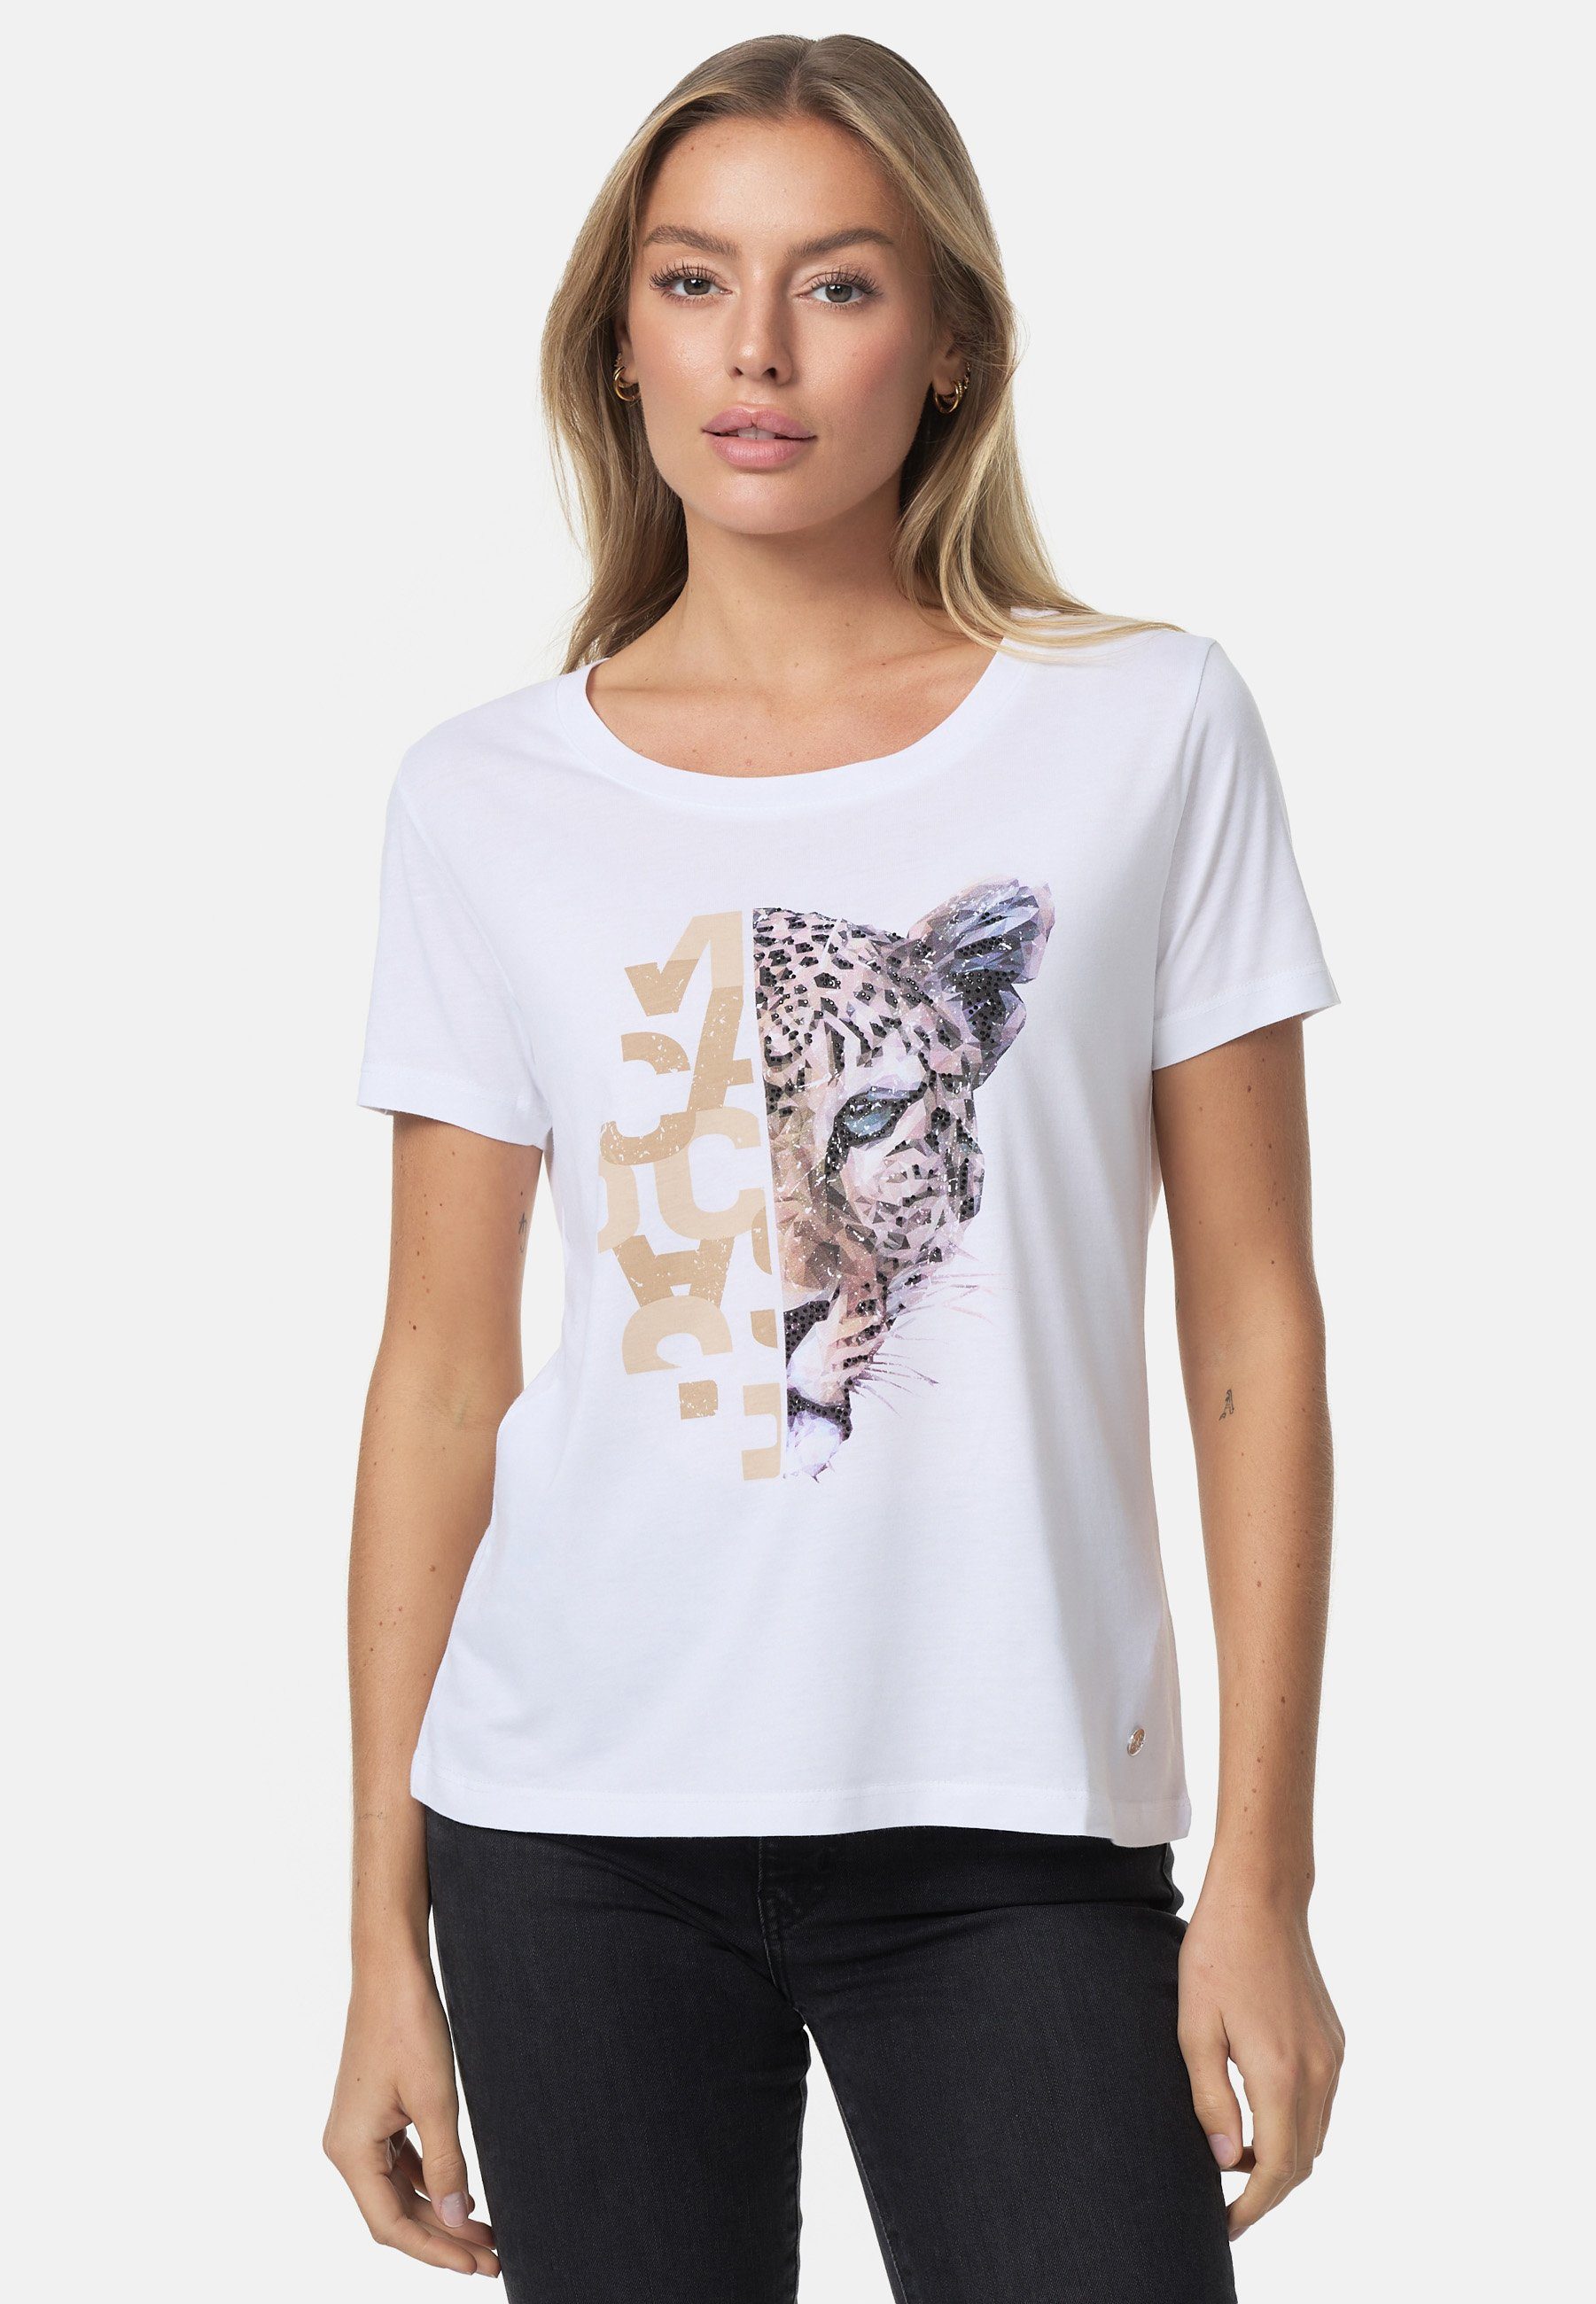 Decay T-Shirt mit stylischem Print, Schlichtes, ansprechendes Design –  vielseitig kombinierbar